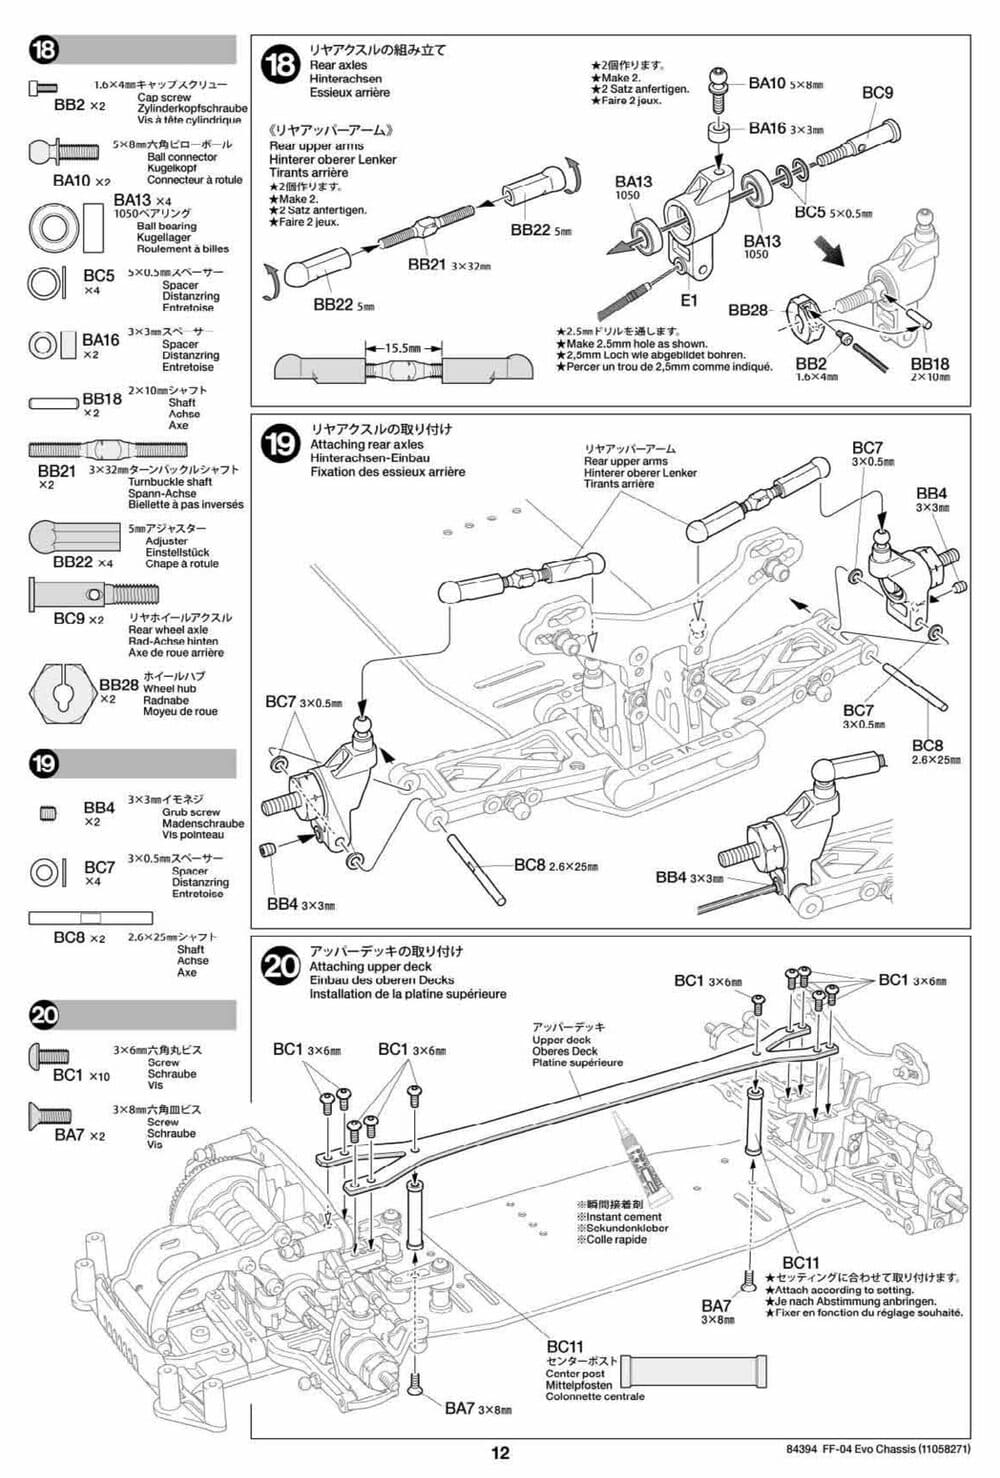 Tamiya - FF-04 Evo Chassis - Manual - Page 12